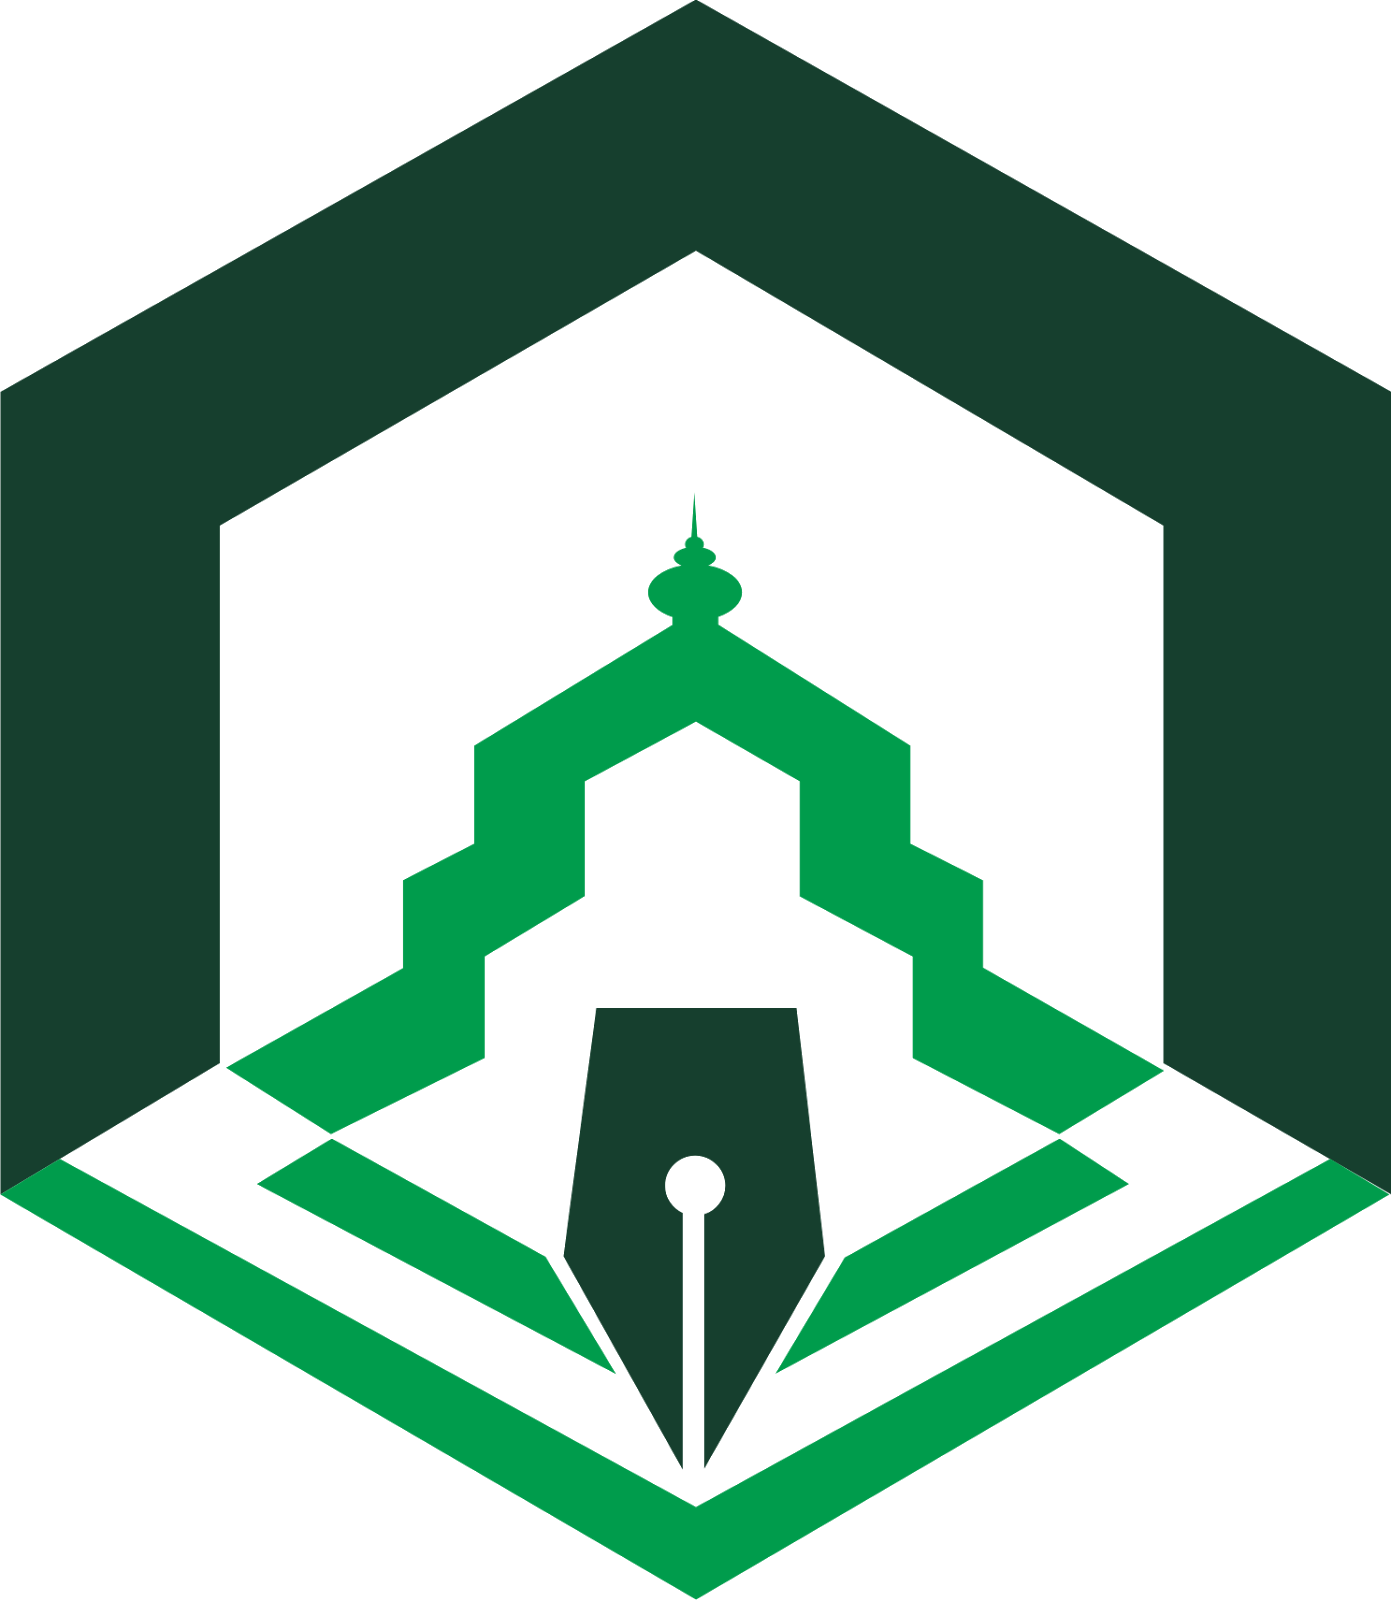 Institut Agama Islam Negeri Palopo